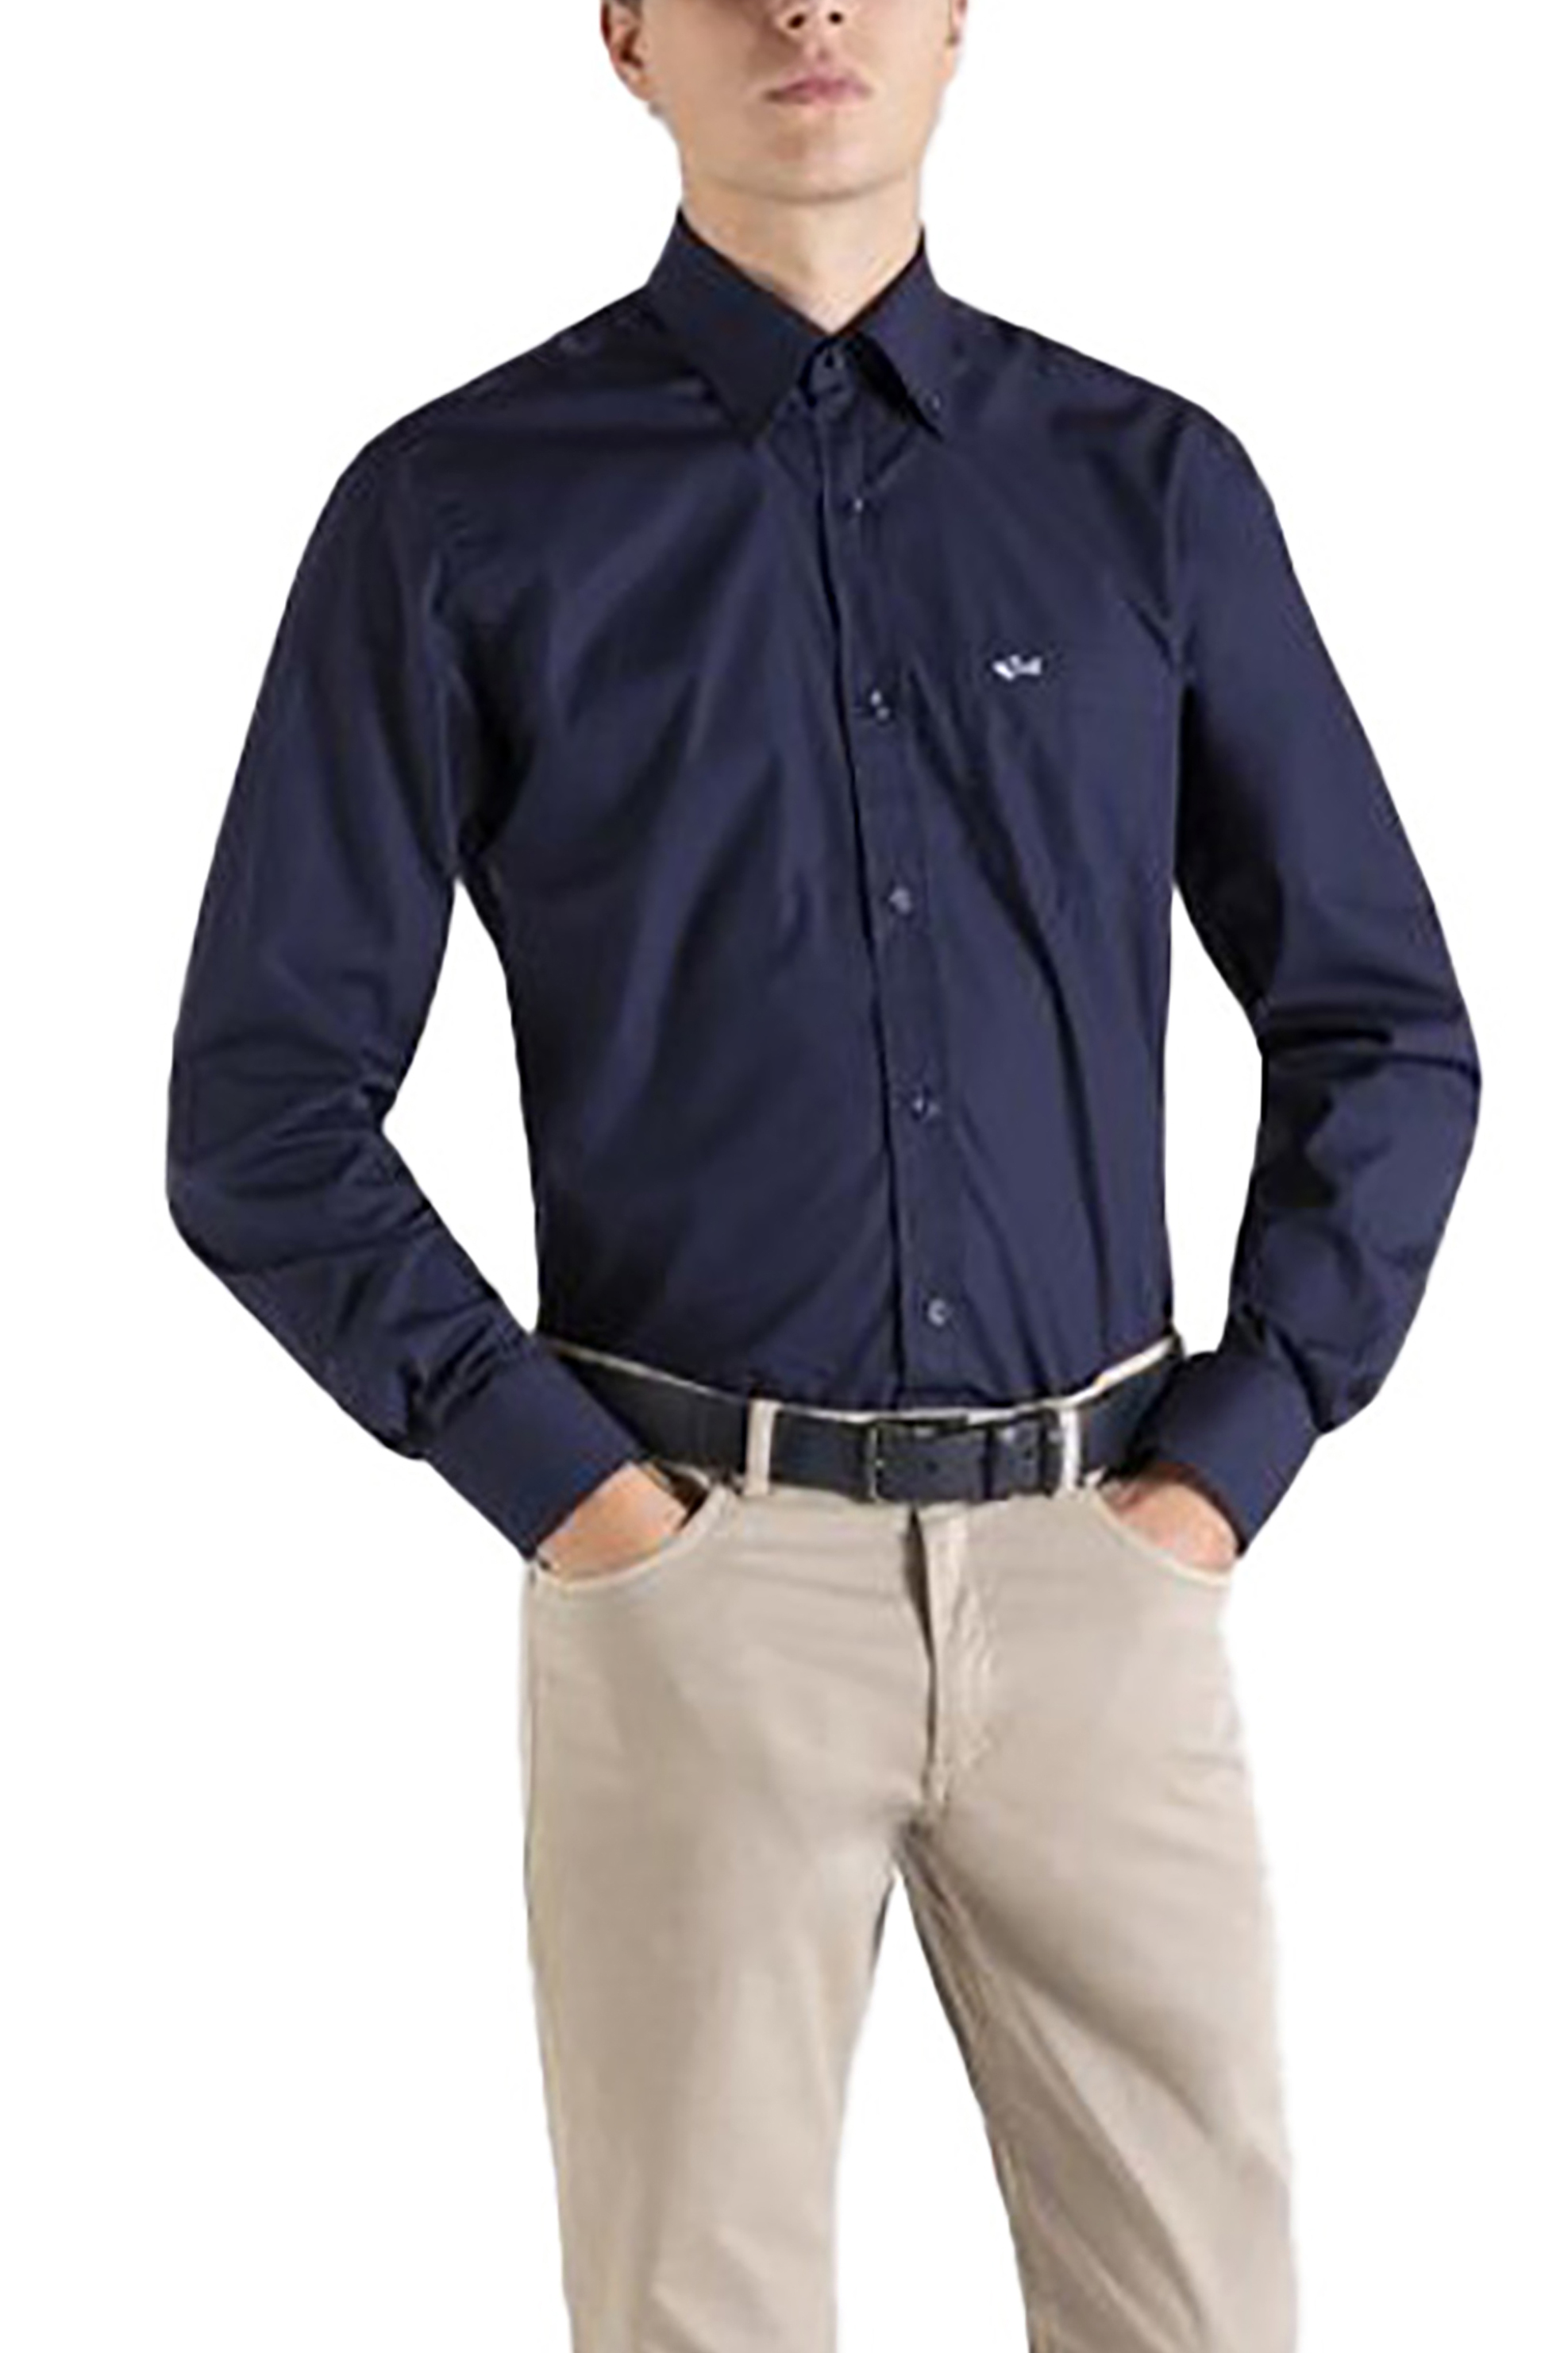 Ανδρική Μόδα > Ανδρικά Ρούχα > Ανδρικά Πουκάμισα > Ανδρικά Πουκάμισα Casual Paul&Shark ανδρικό πουκάμισο μονόχρωμο με απλικέ τσέπη - C0P3001 Μπλε Σκούρο